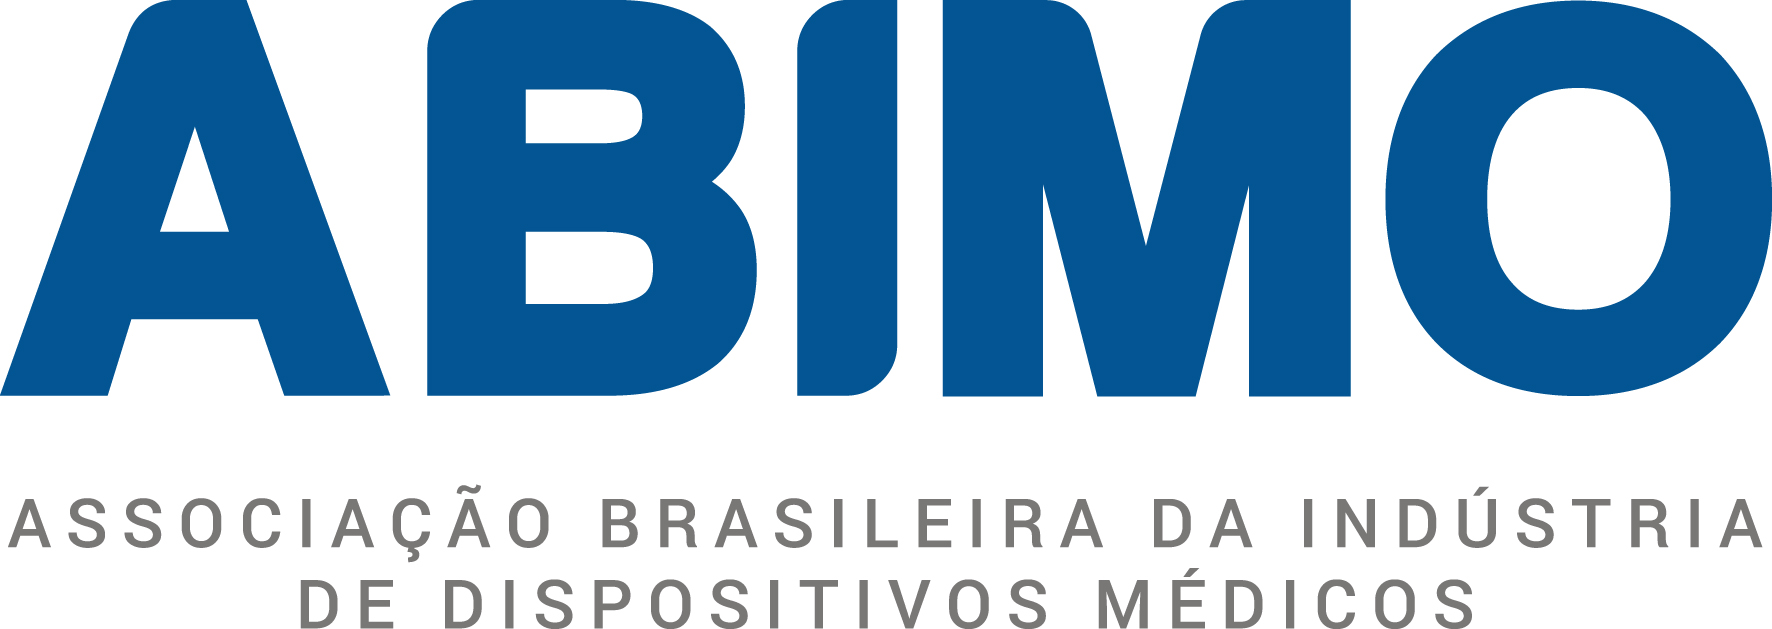 ABIMO comemora 60 anos com ambiente digital exclusivo sobre sua atuação no setor da saúde